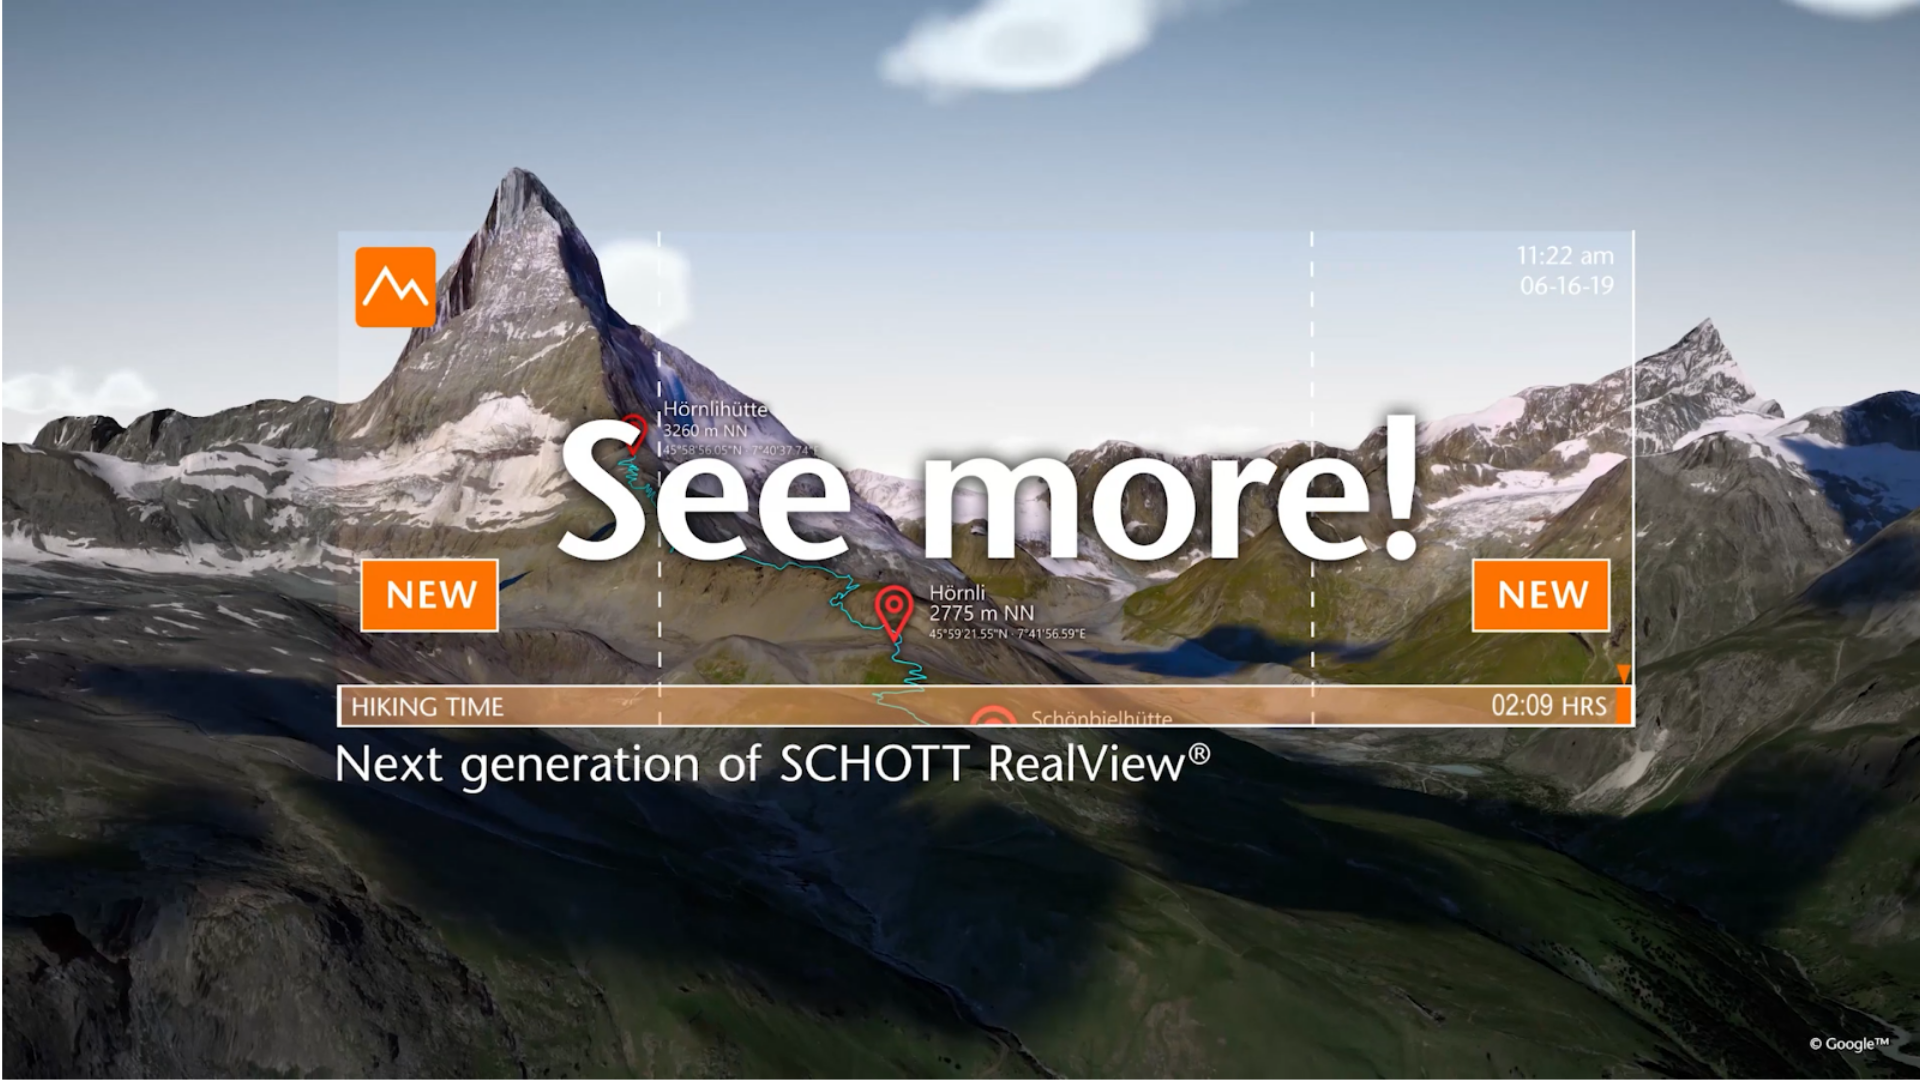 Haga clic para descubrir cómo SCHOTT RealView® le permite descubrir más sobre el mundo que le rodea